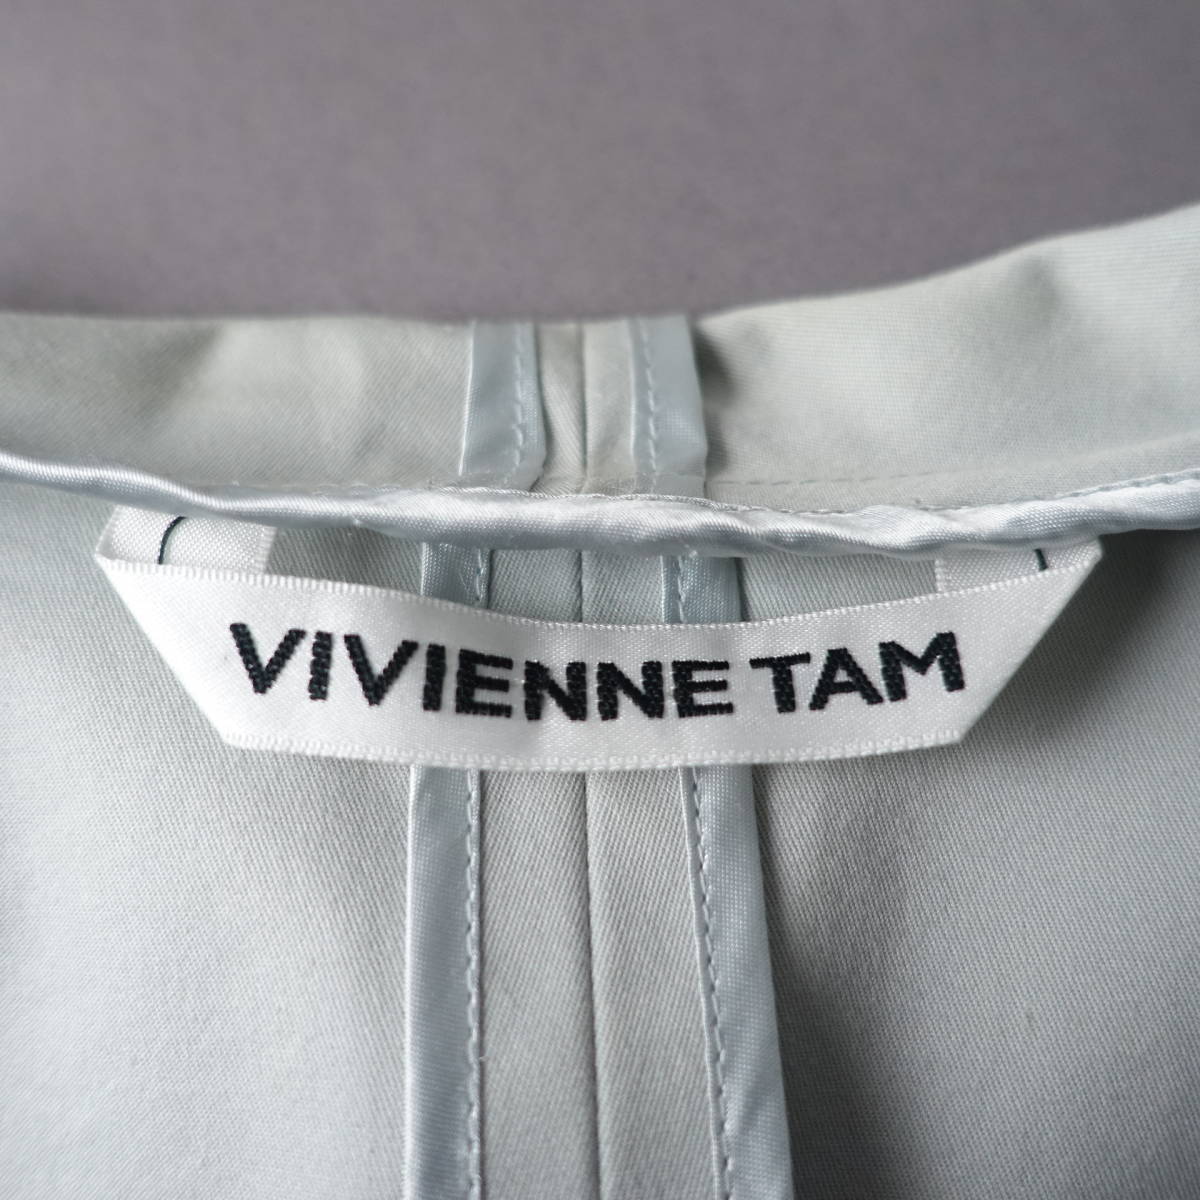 VIVIENNE TAM/.../.../0/ сделано в Японии  пиджак / light  синий  / женский / длинный рукав  /... ... ...